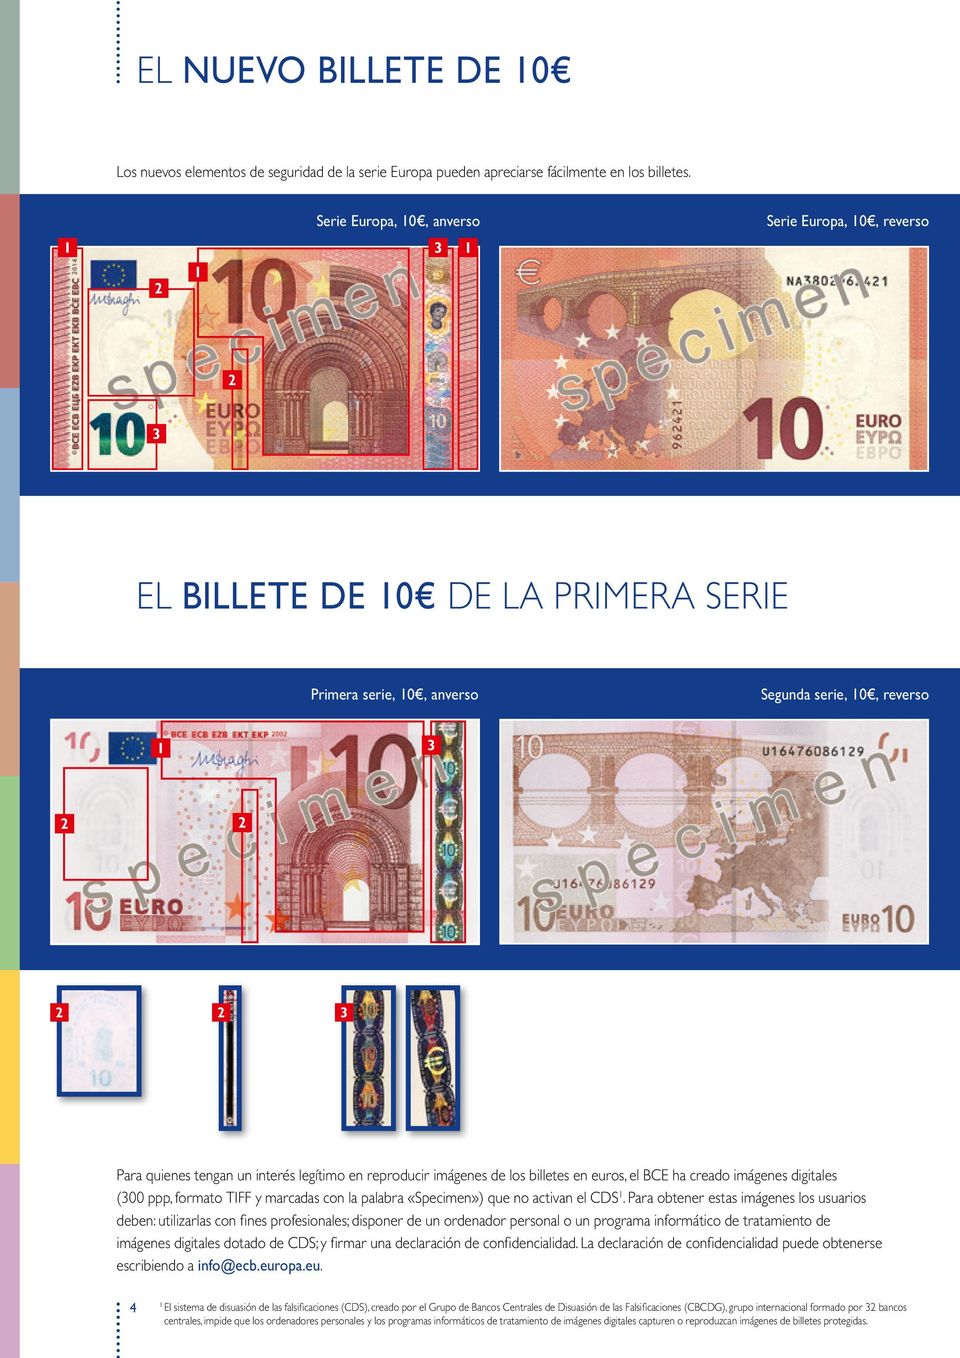 reproducir imágenes de los billetes en euros, el BCE ha creado imágenes digitales (300 ppp, formato TIFF y marcadas con la palabra «Specimen») que no activan el CDS 1.